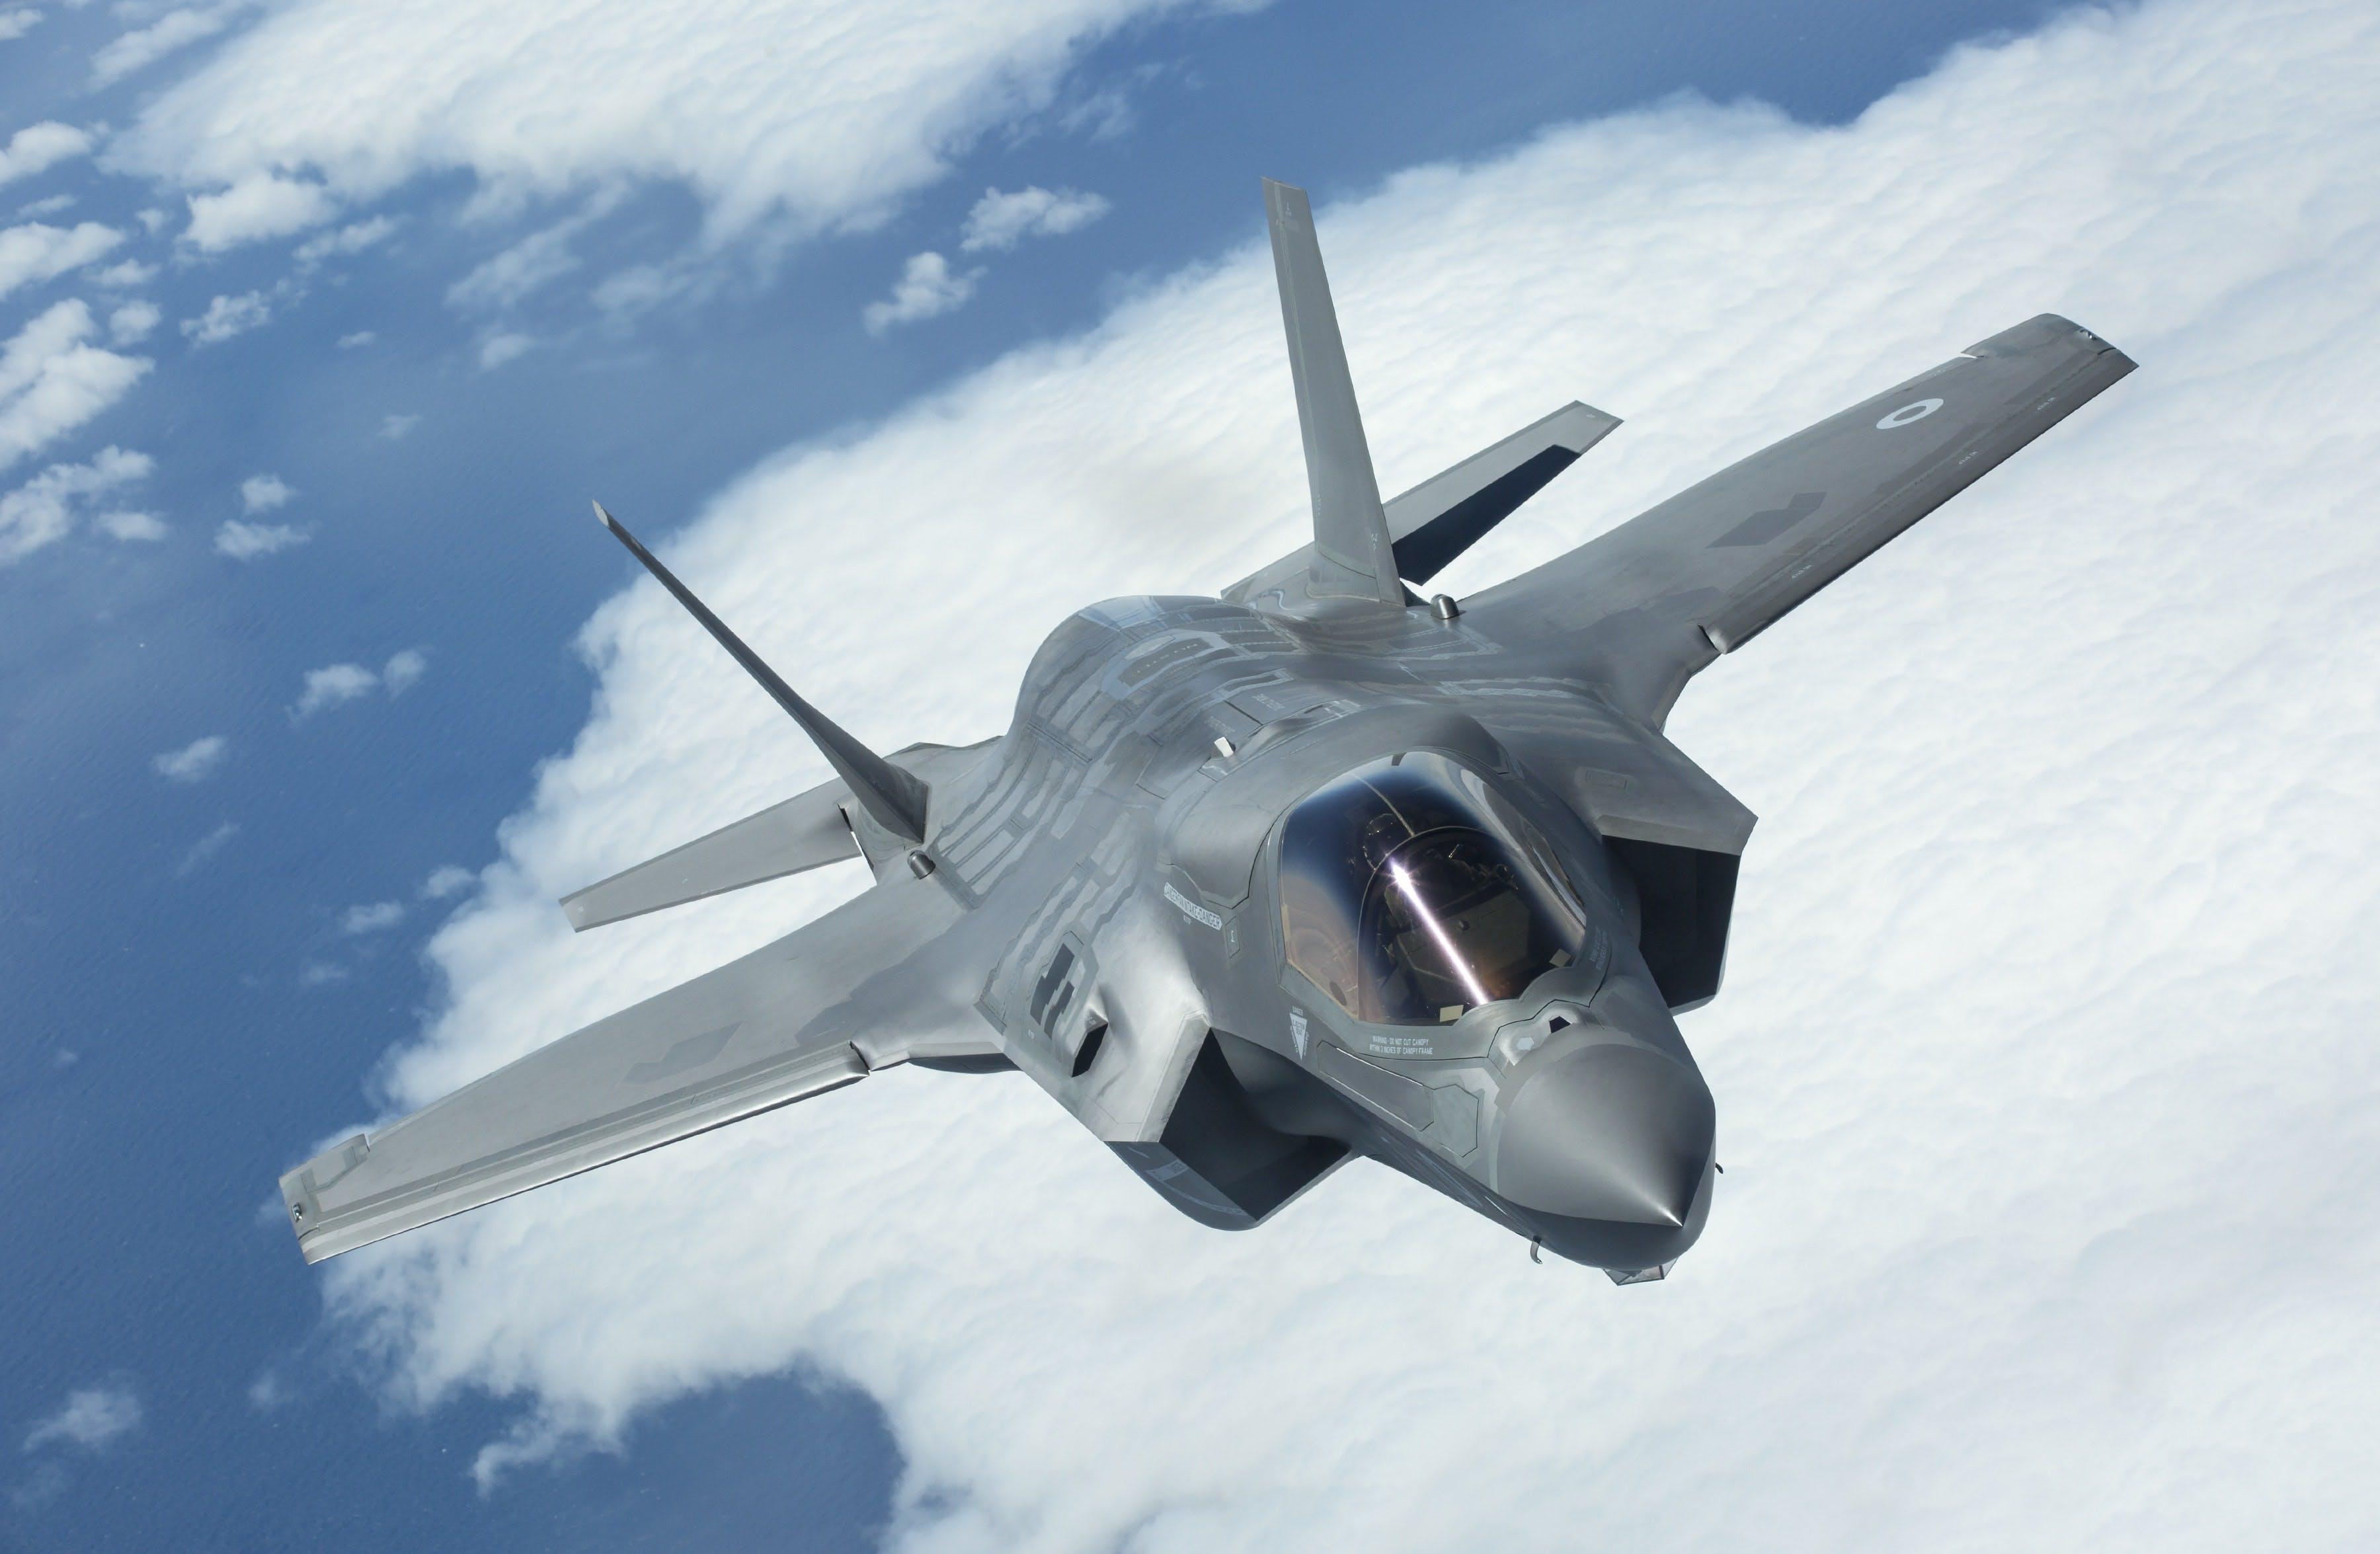 Procjenjuje se da će F-35 koštati oko 100 miliona funti odnosno 134,7 miliona dolara - Avaz